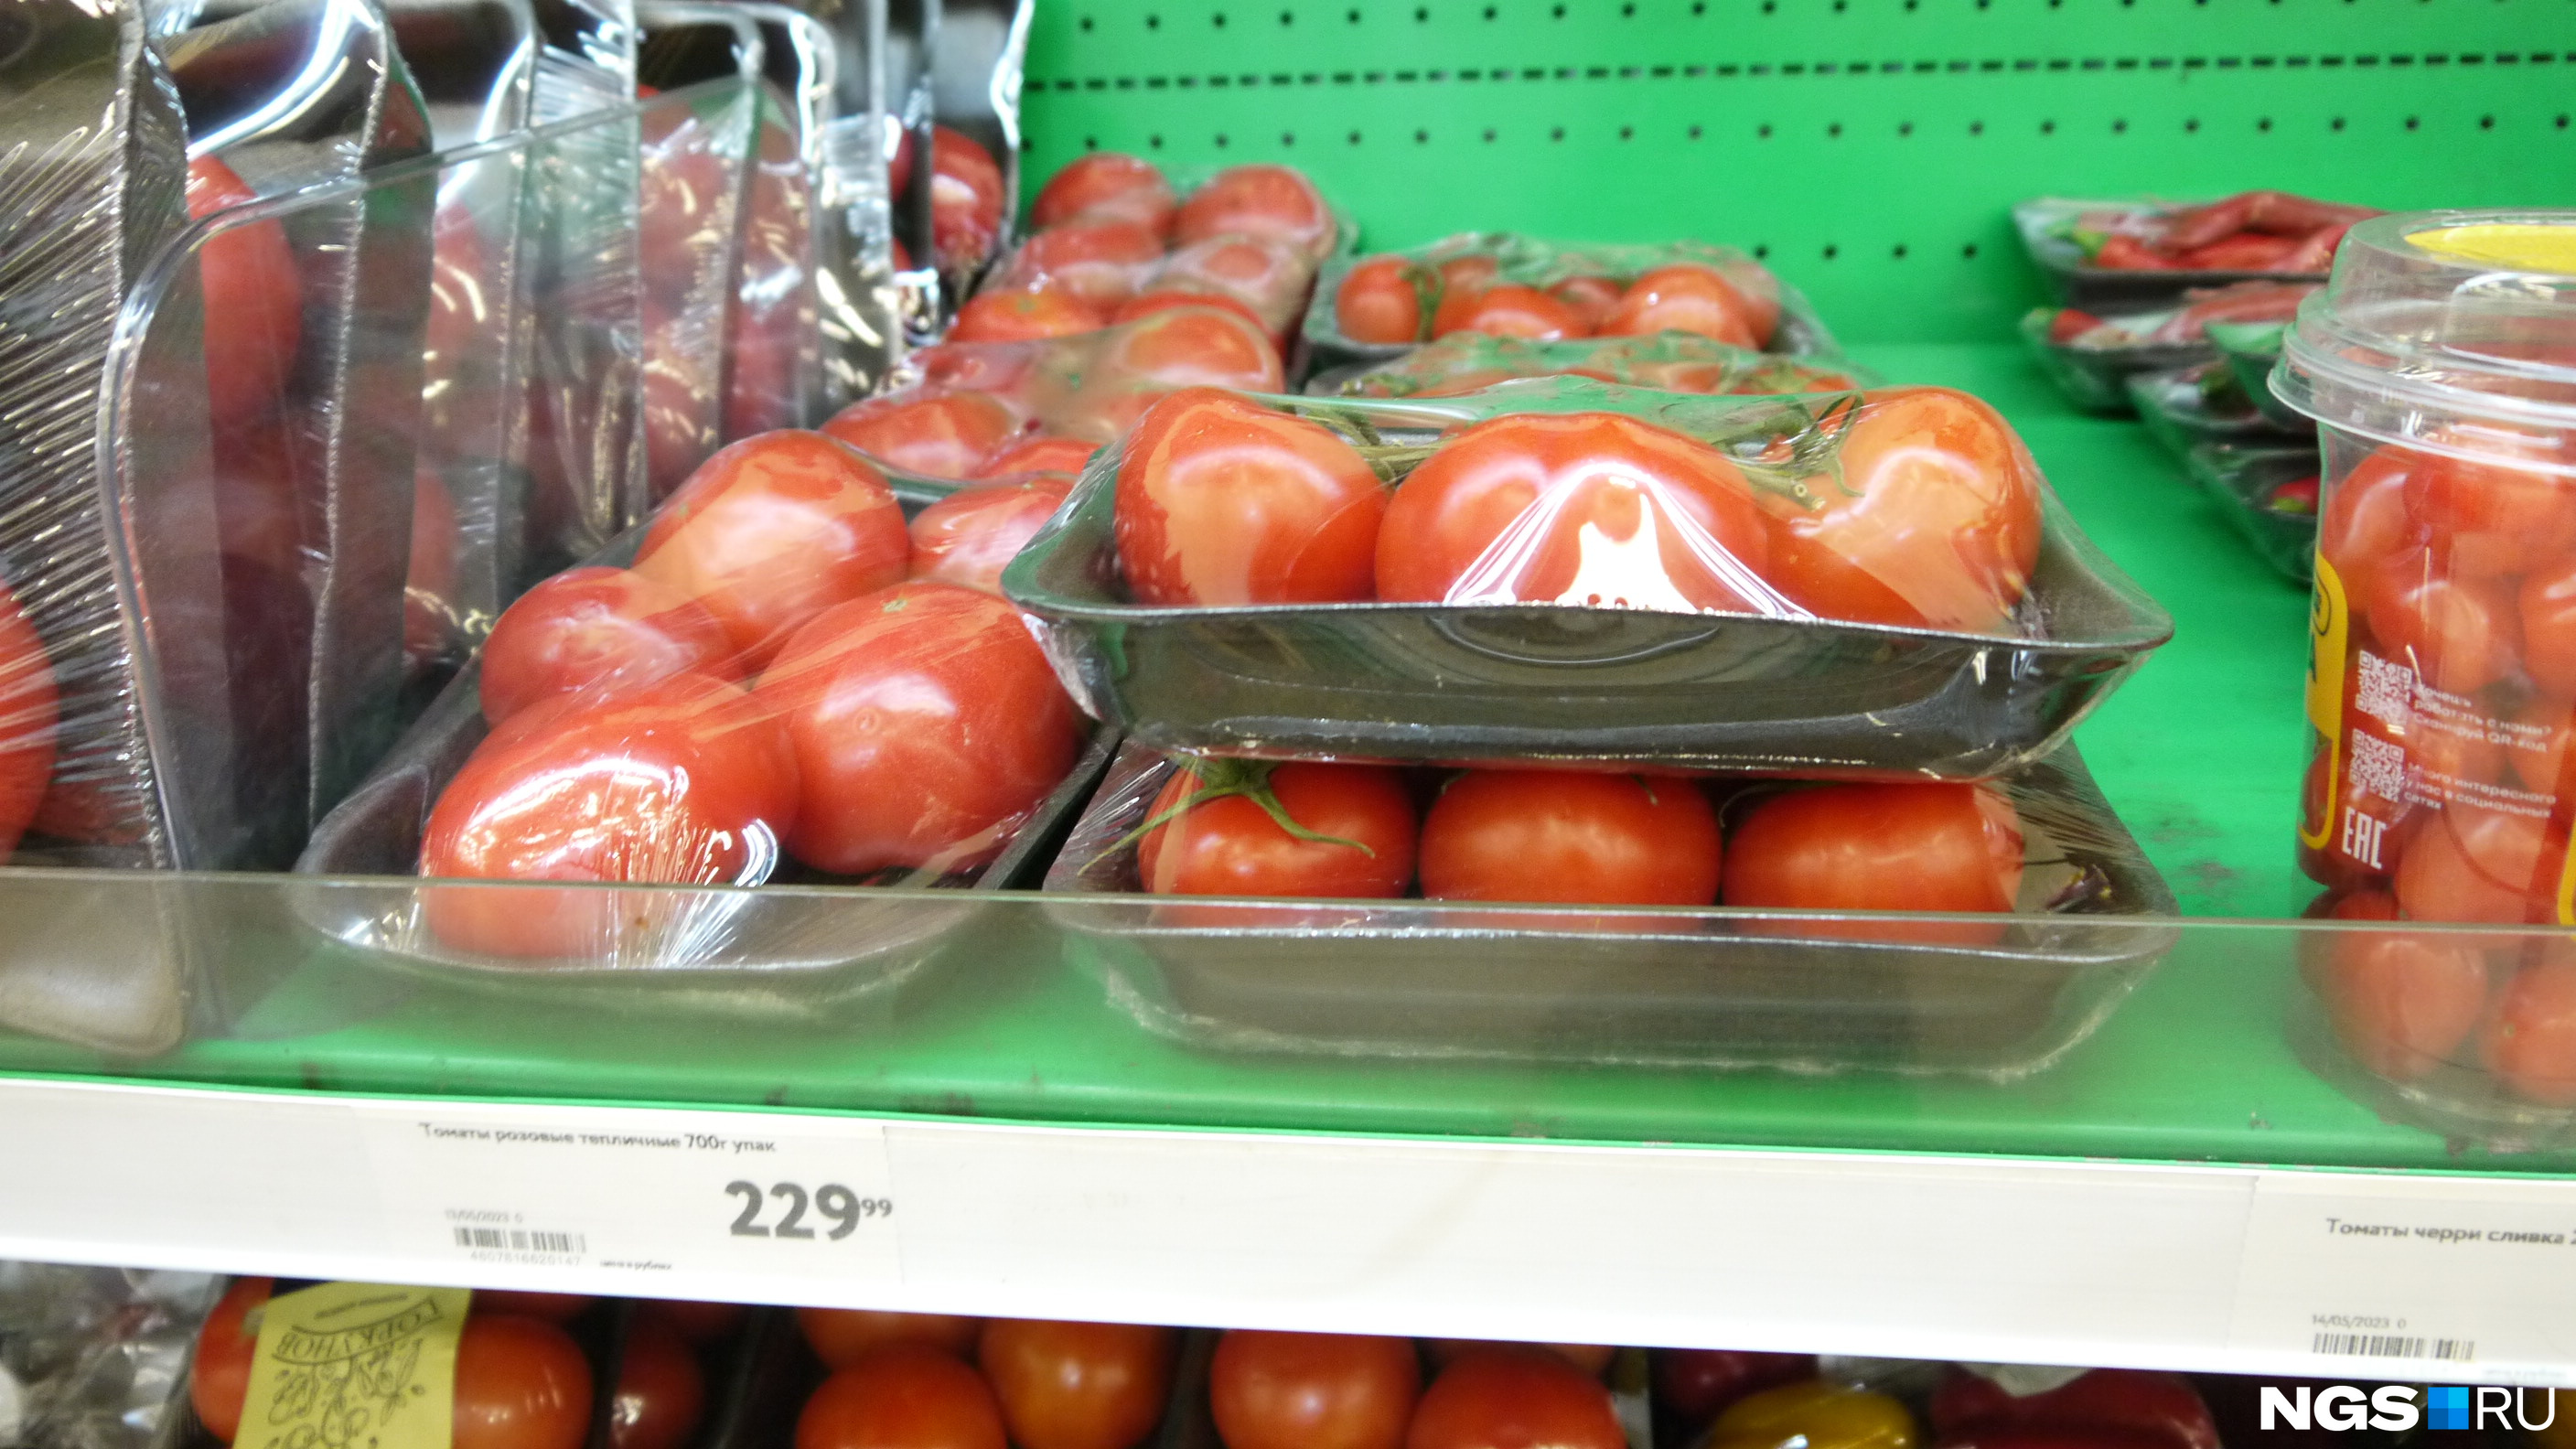 Овощи на подложке удобны, но почти всегда будут стоить дороже